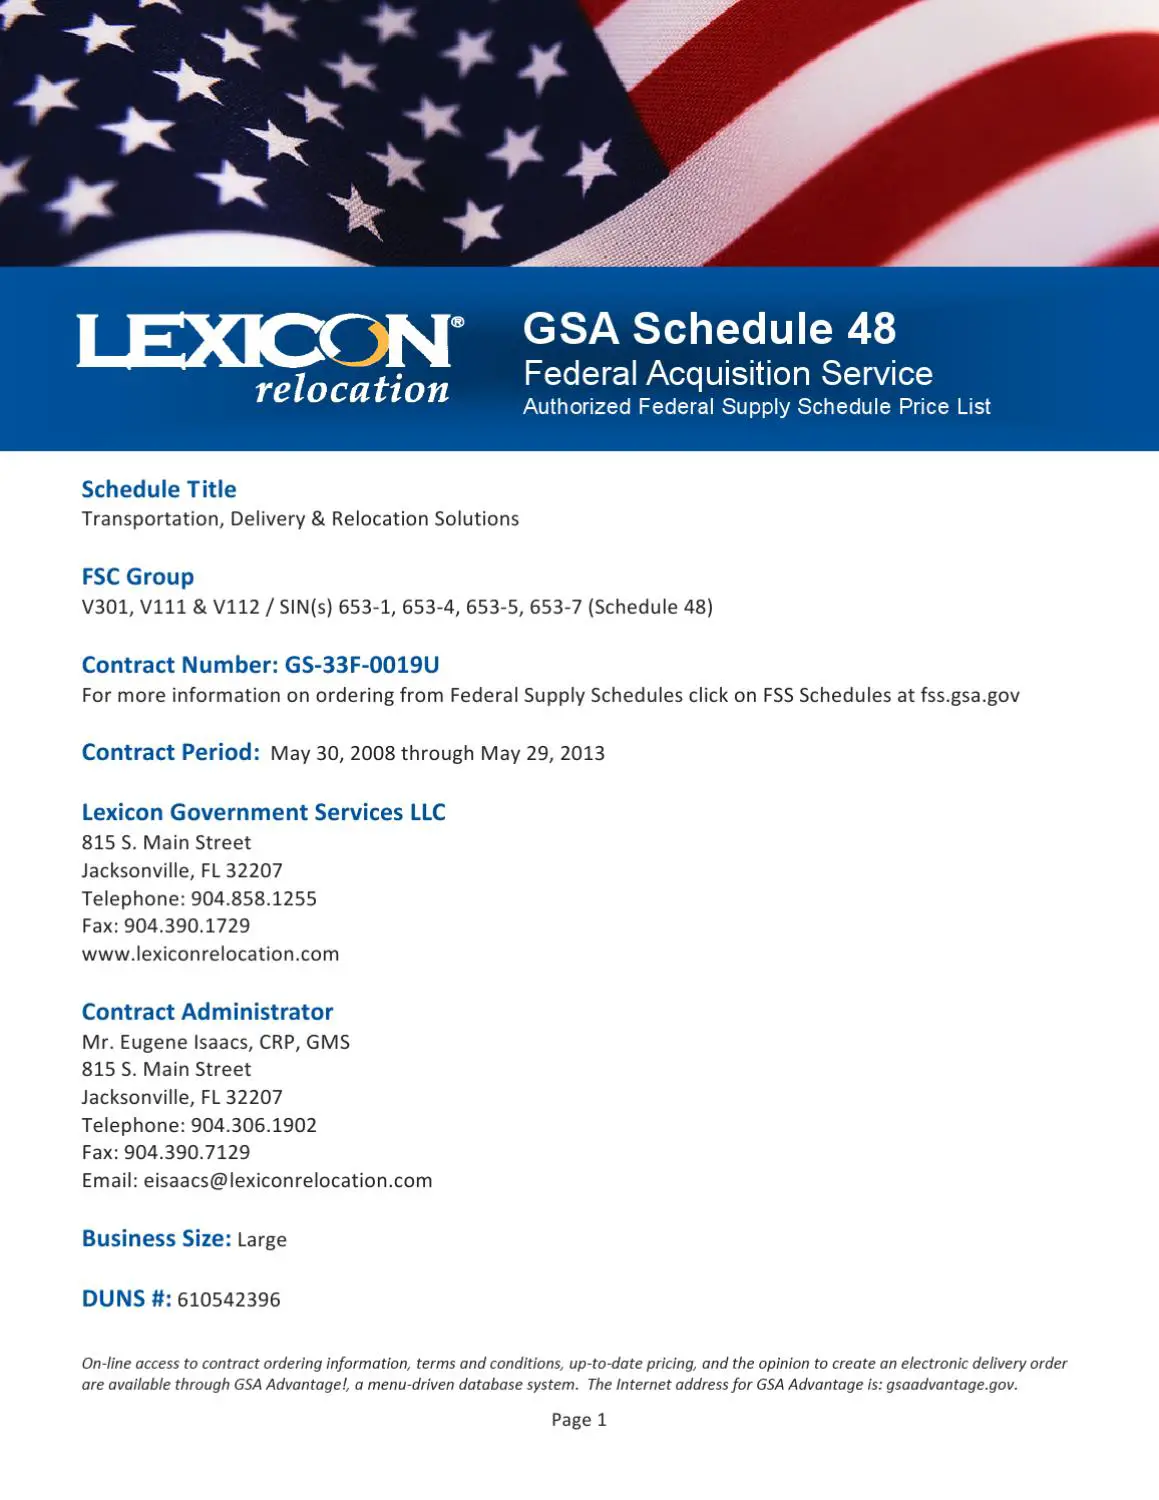 2012 GSA Schedule 48